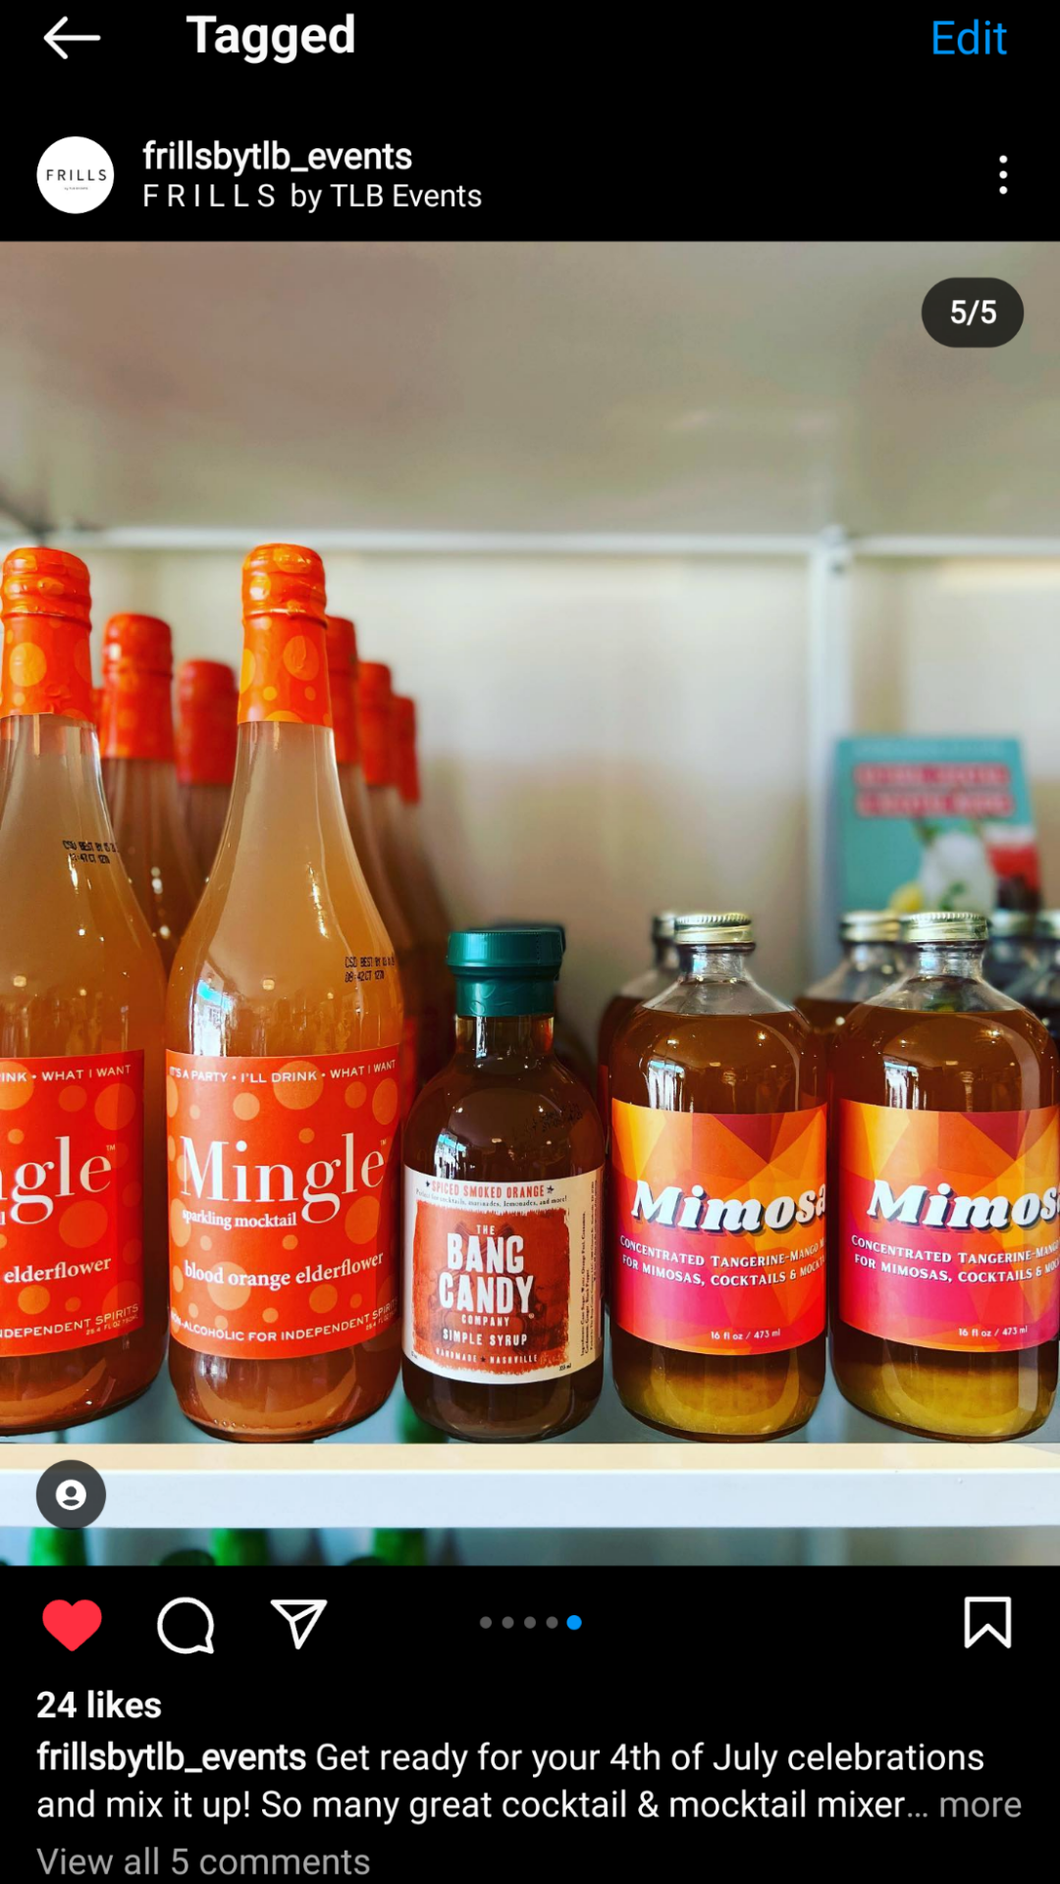 Wood Stove Kitchen - Funky Label - Mimosa Mixer w/ Tangerine & Mango, 16 fl oz